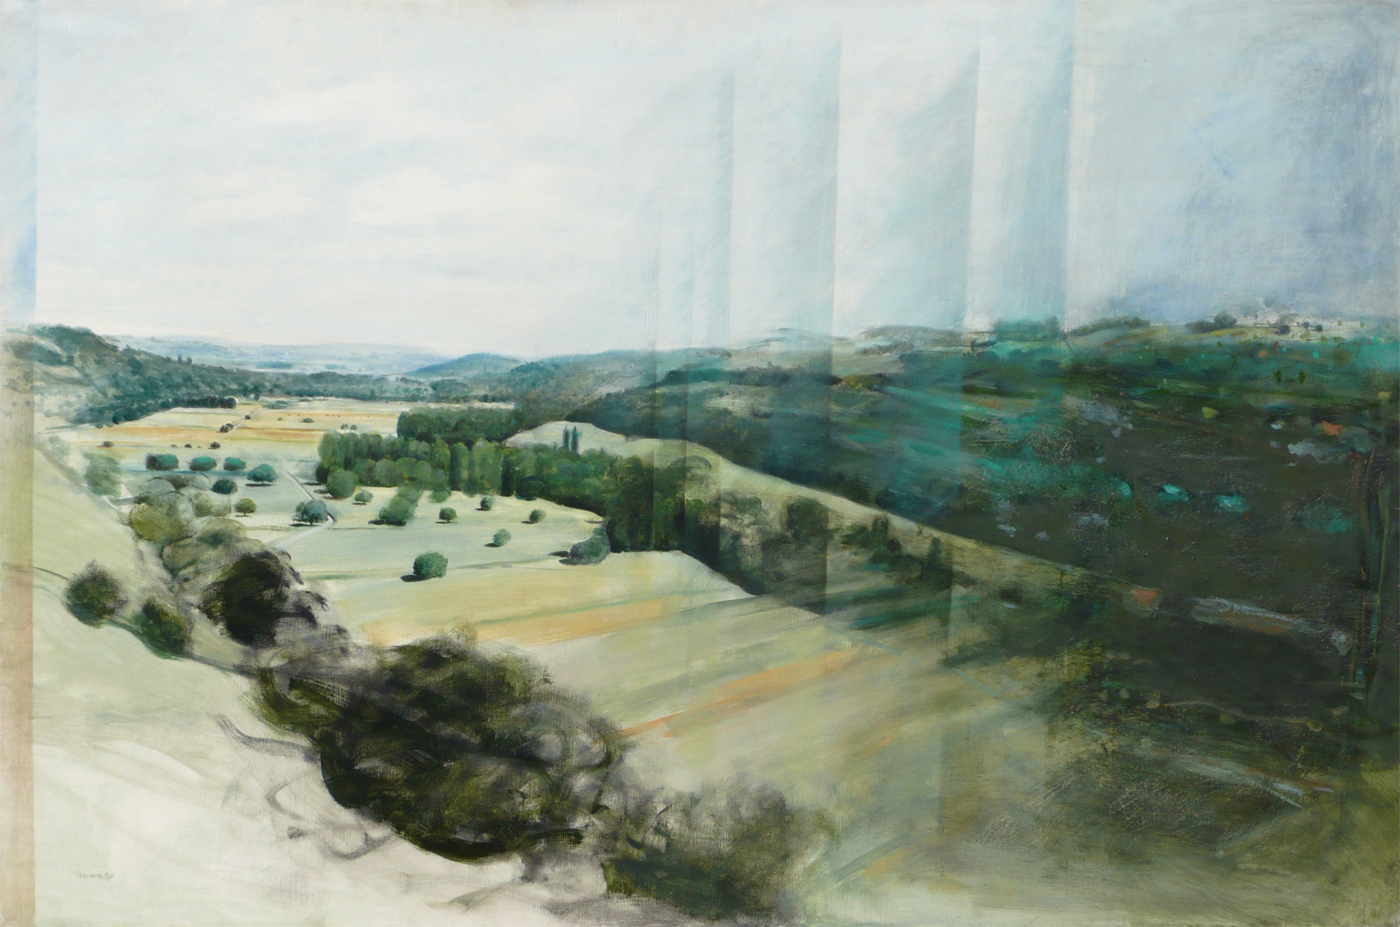 Glissement progressif d’un paysage, 1979, huile sur toile, 146x97cm